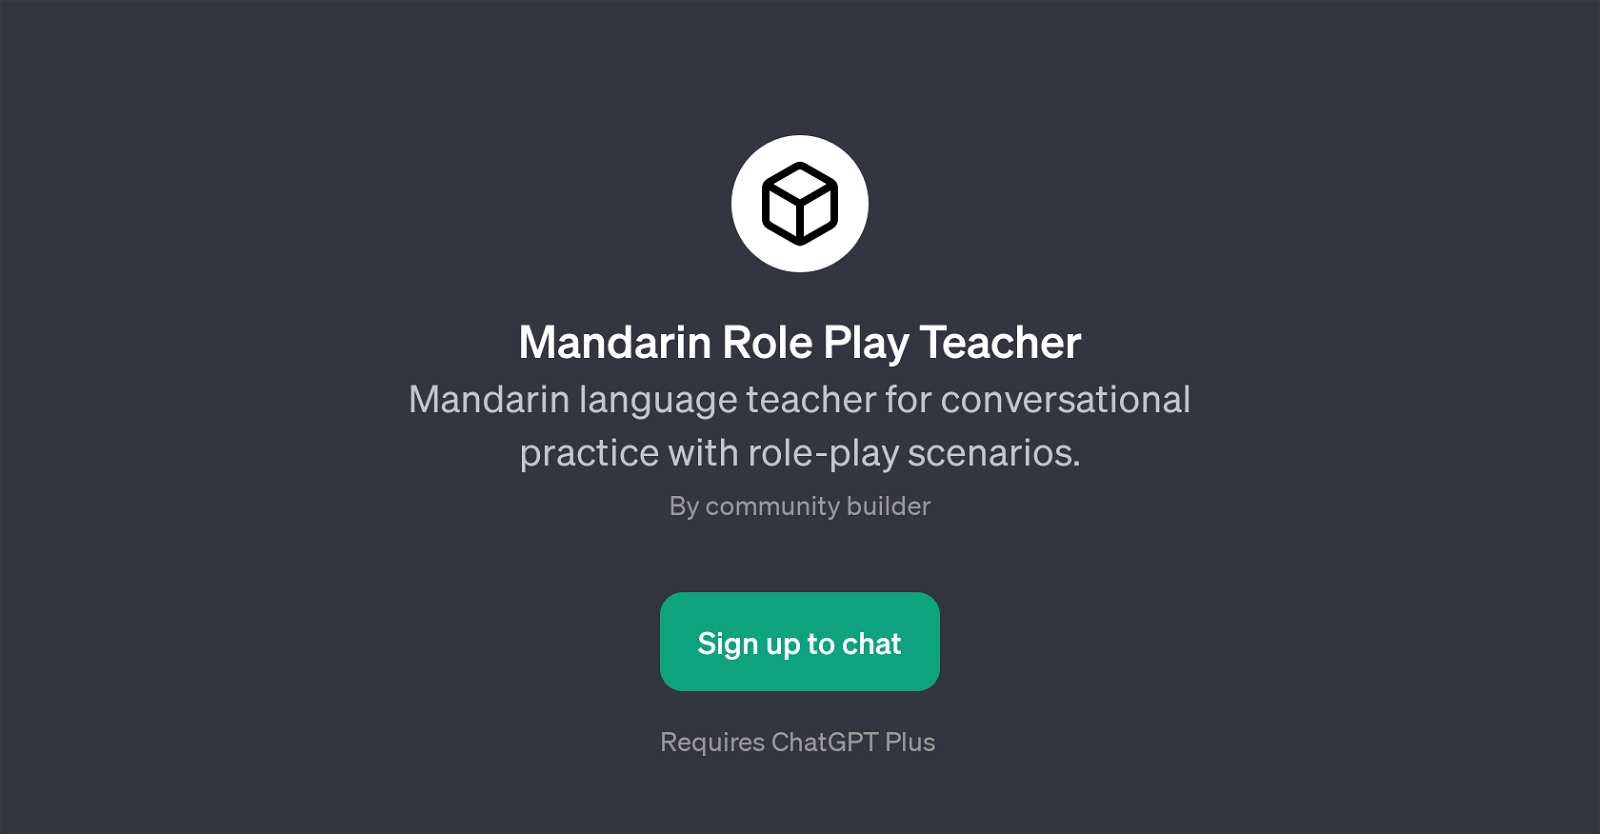 Mandarin Role Play Teacher website